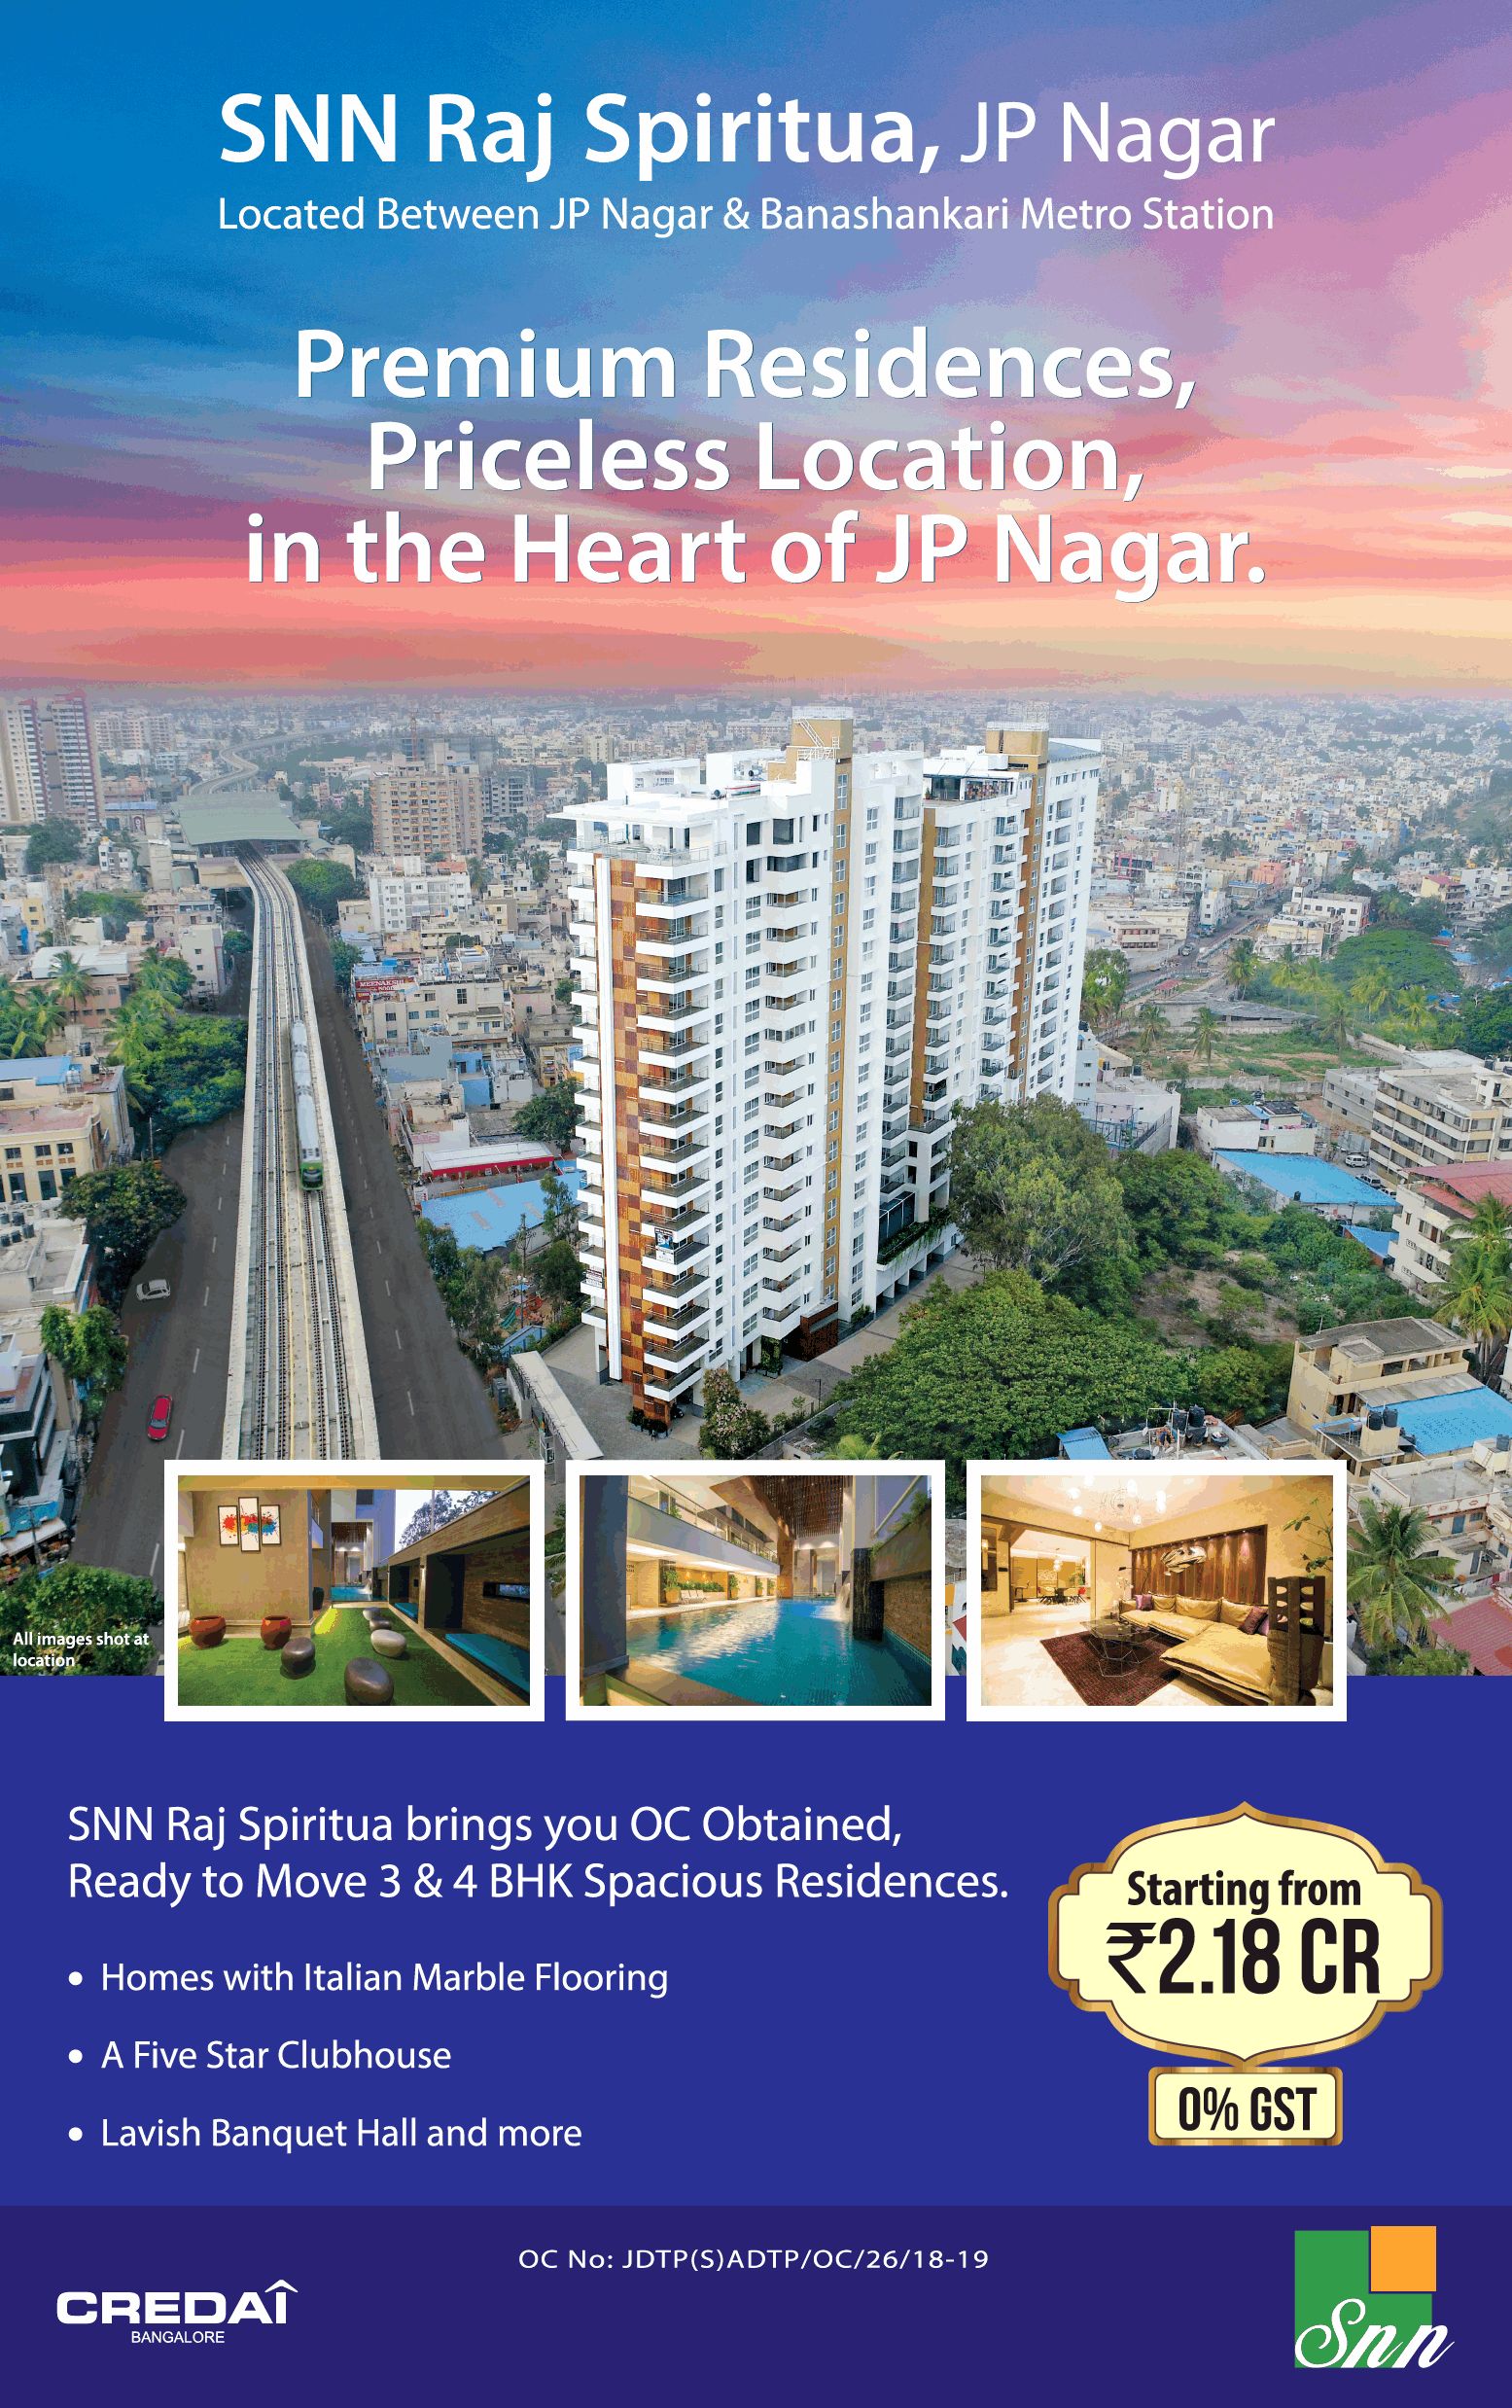 SNN Raj Spiritua ready to move 3 & 4 bhk spacious residences in Bangalore Update